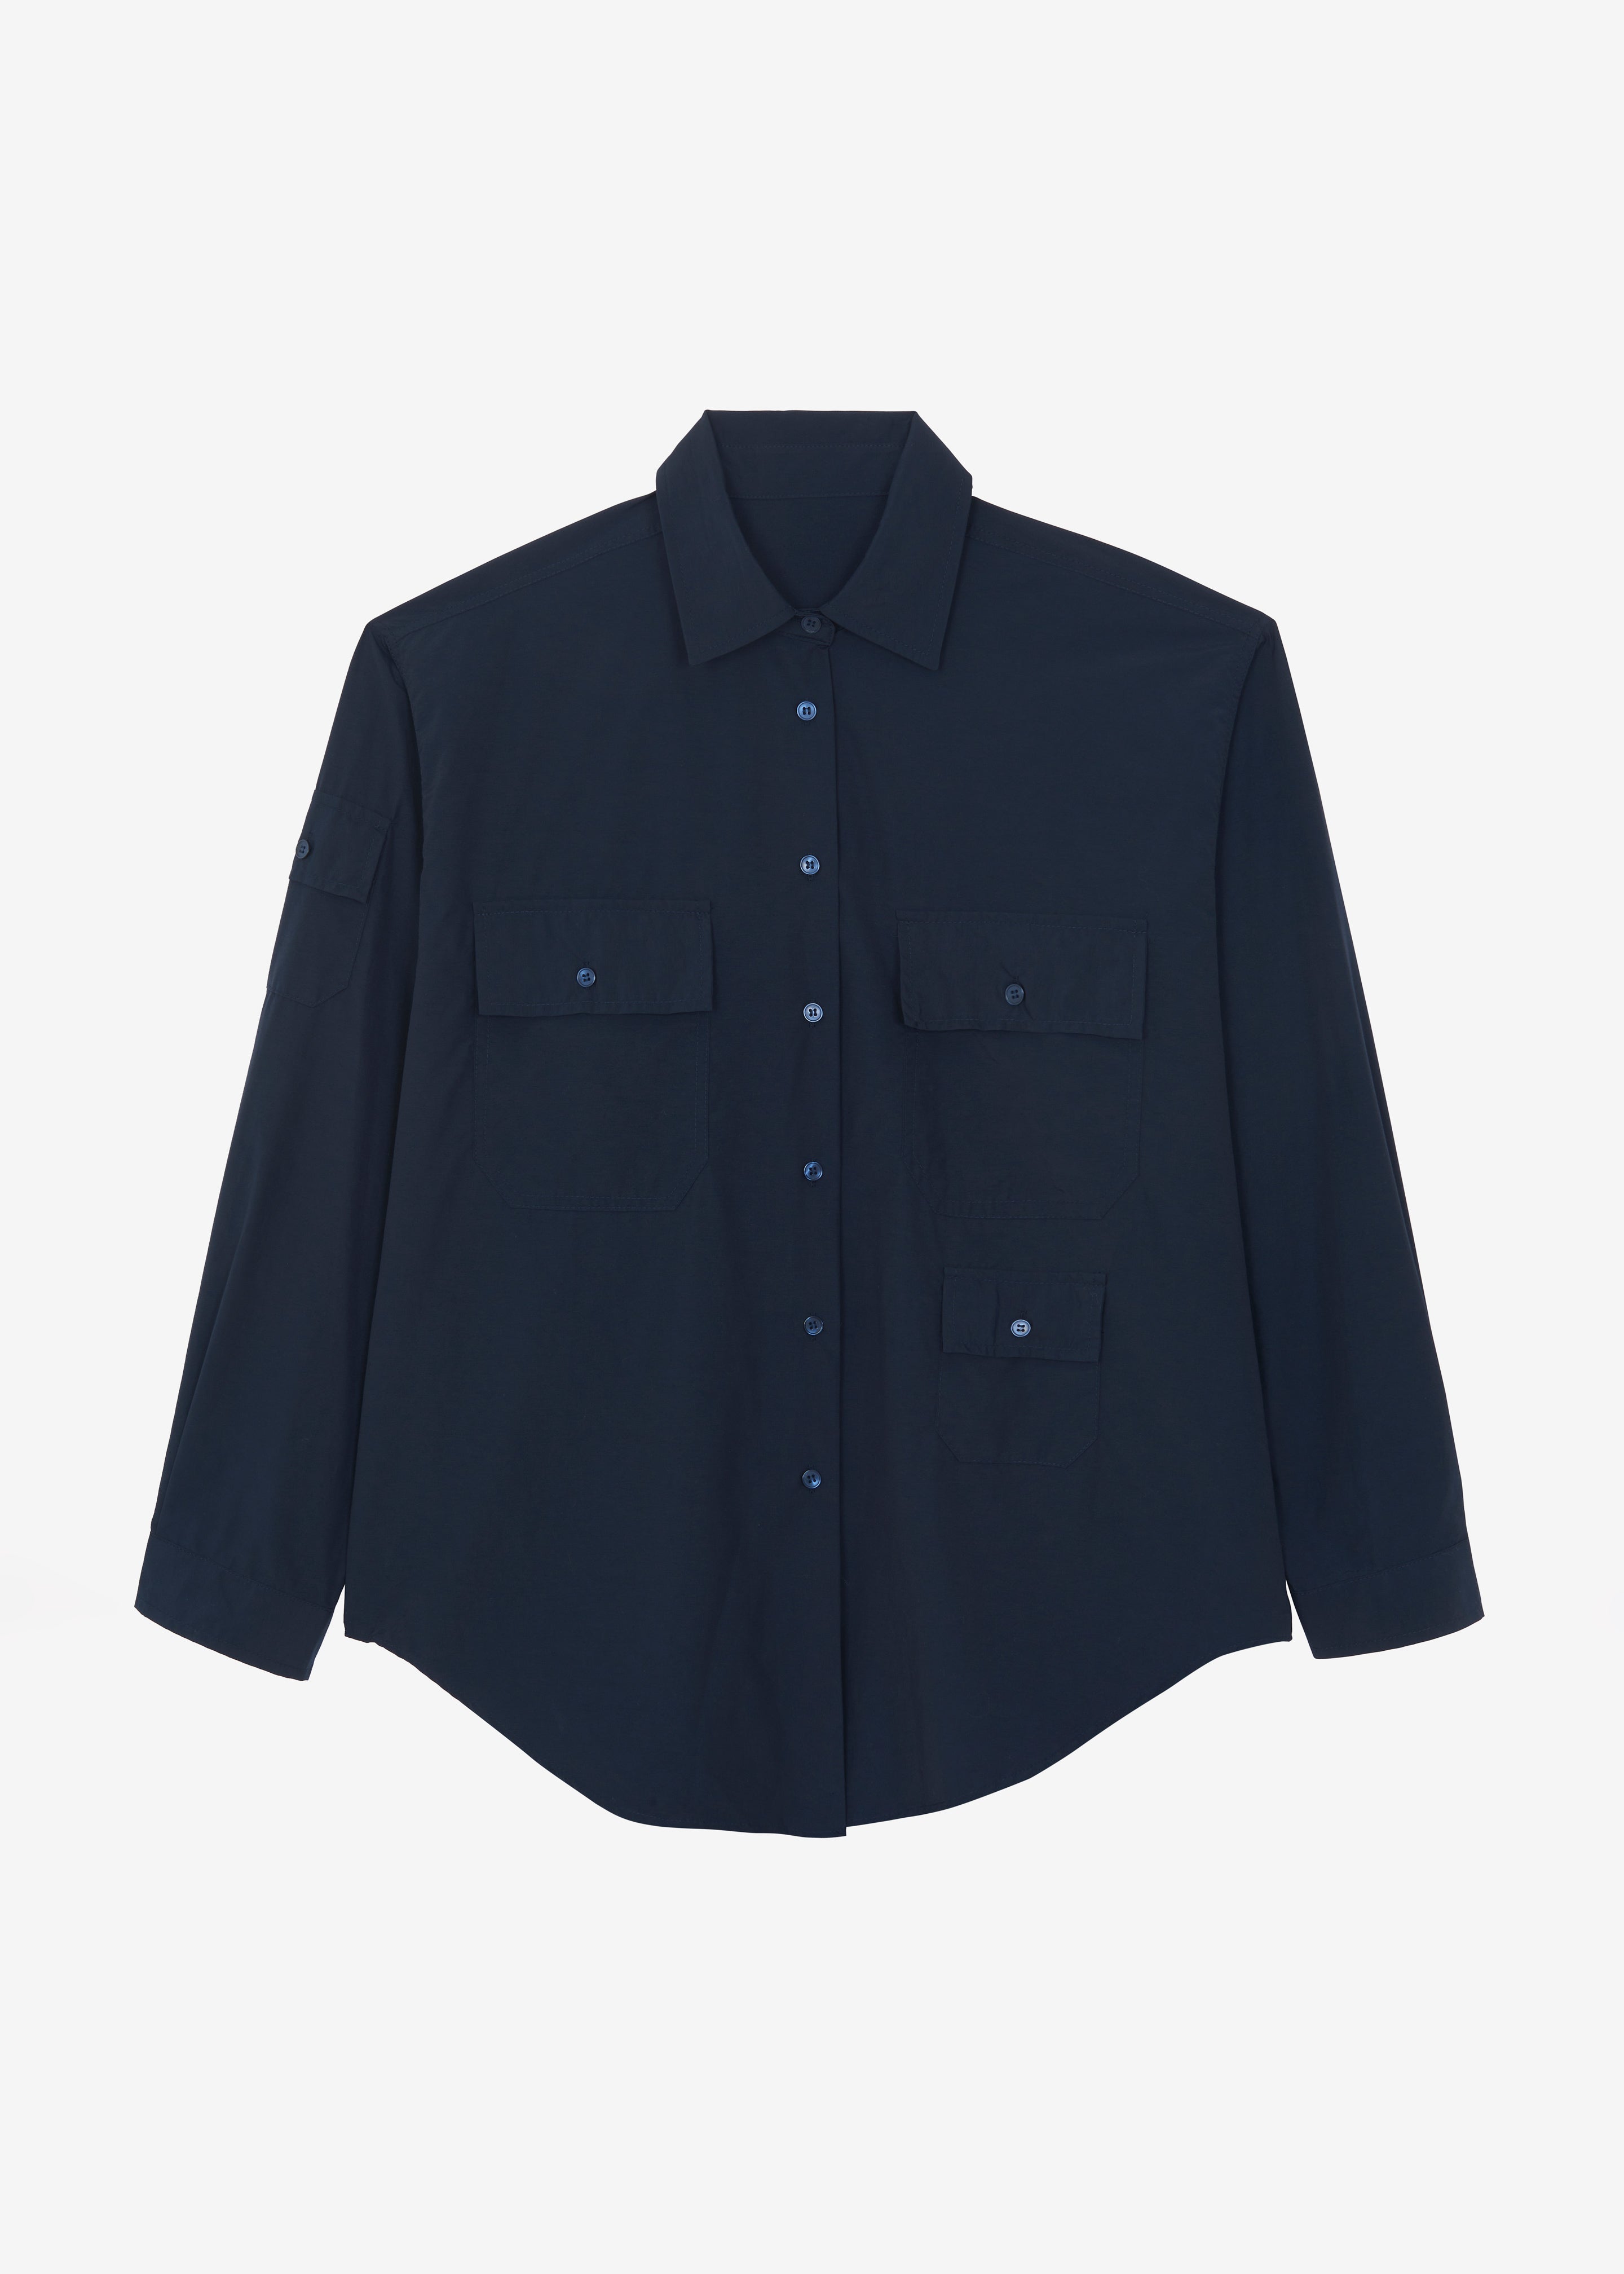 Jana Cargo Button Up Shirt - Navy - 11